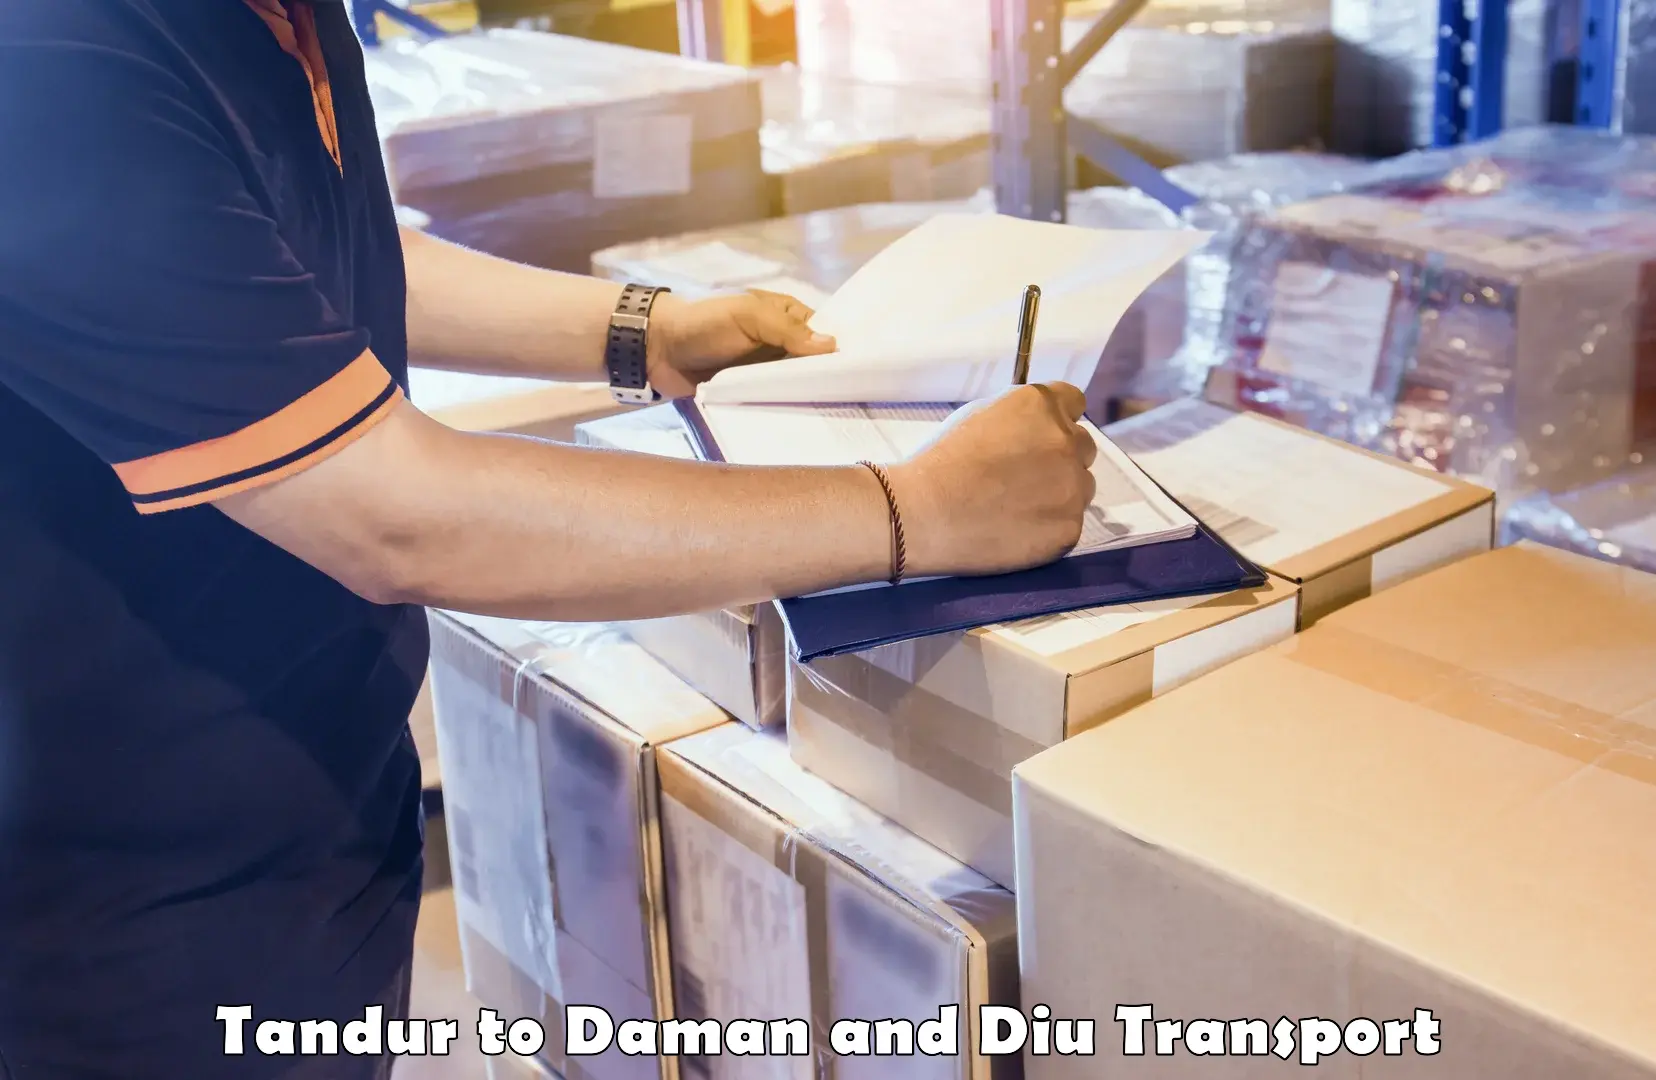 Daily parcel service transport Tandur to Daman and Diu